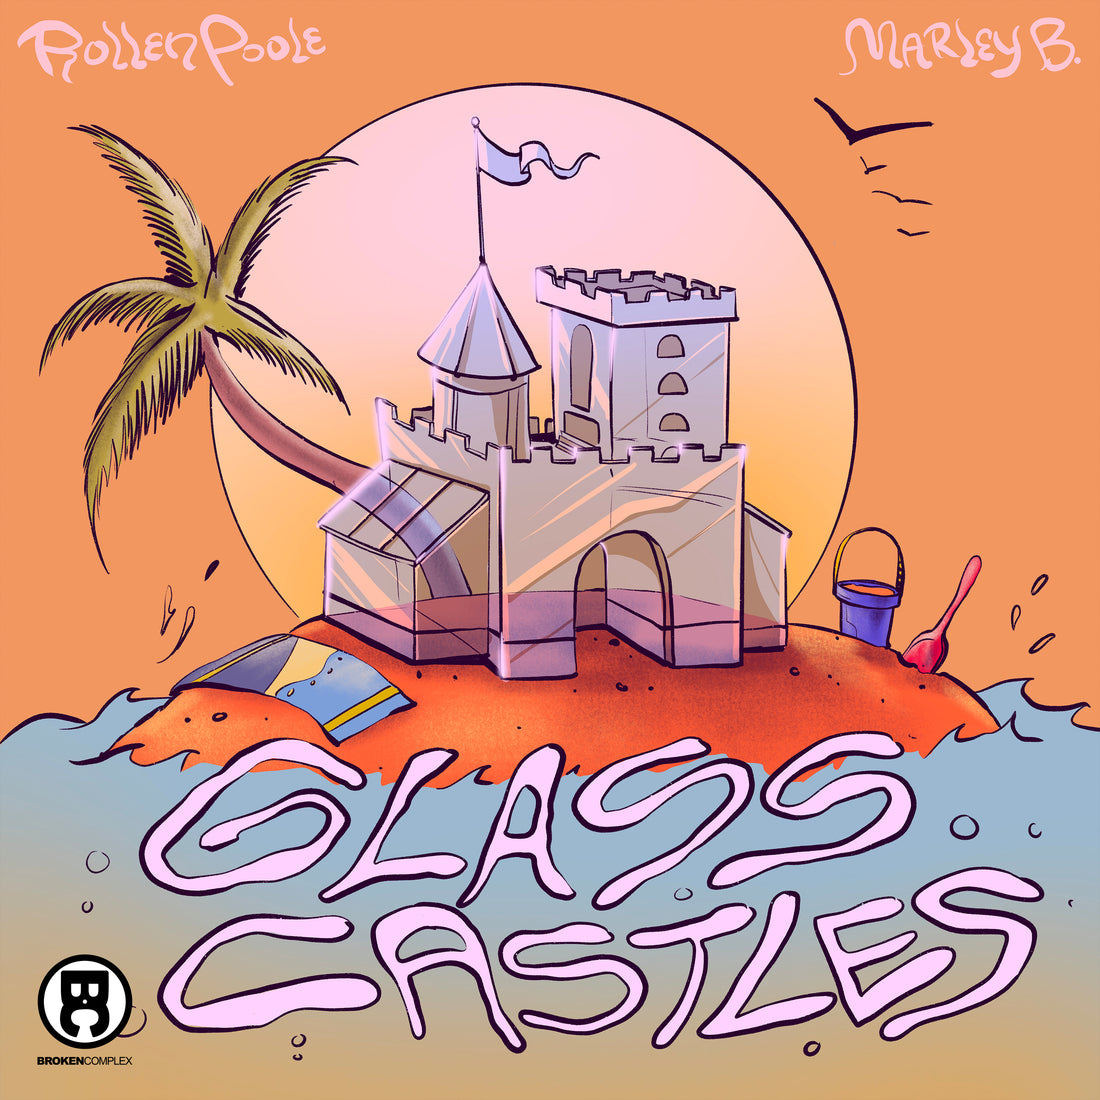 New Single: Rollen Poole & Marley B. - Glass Castles